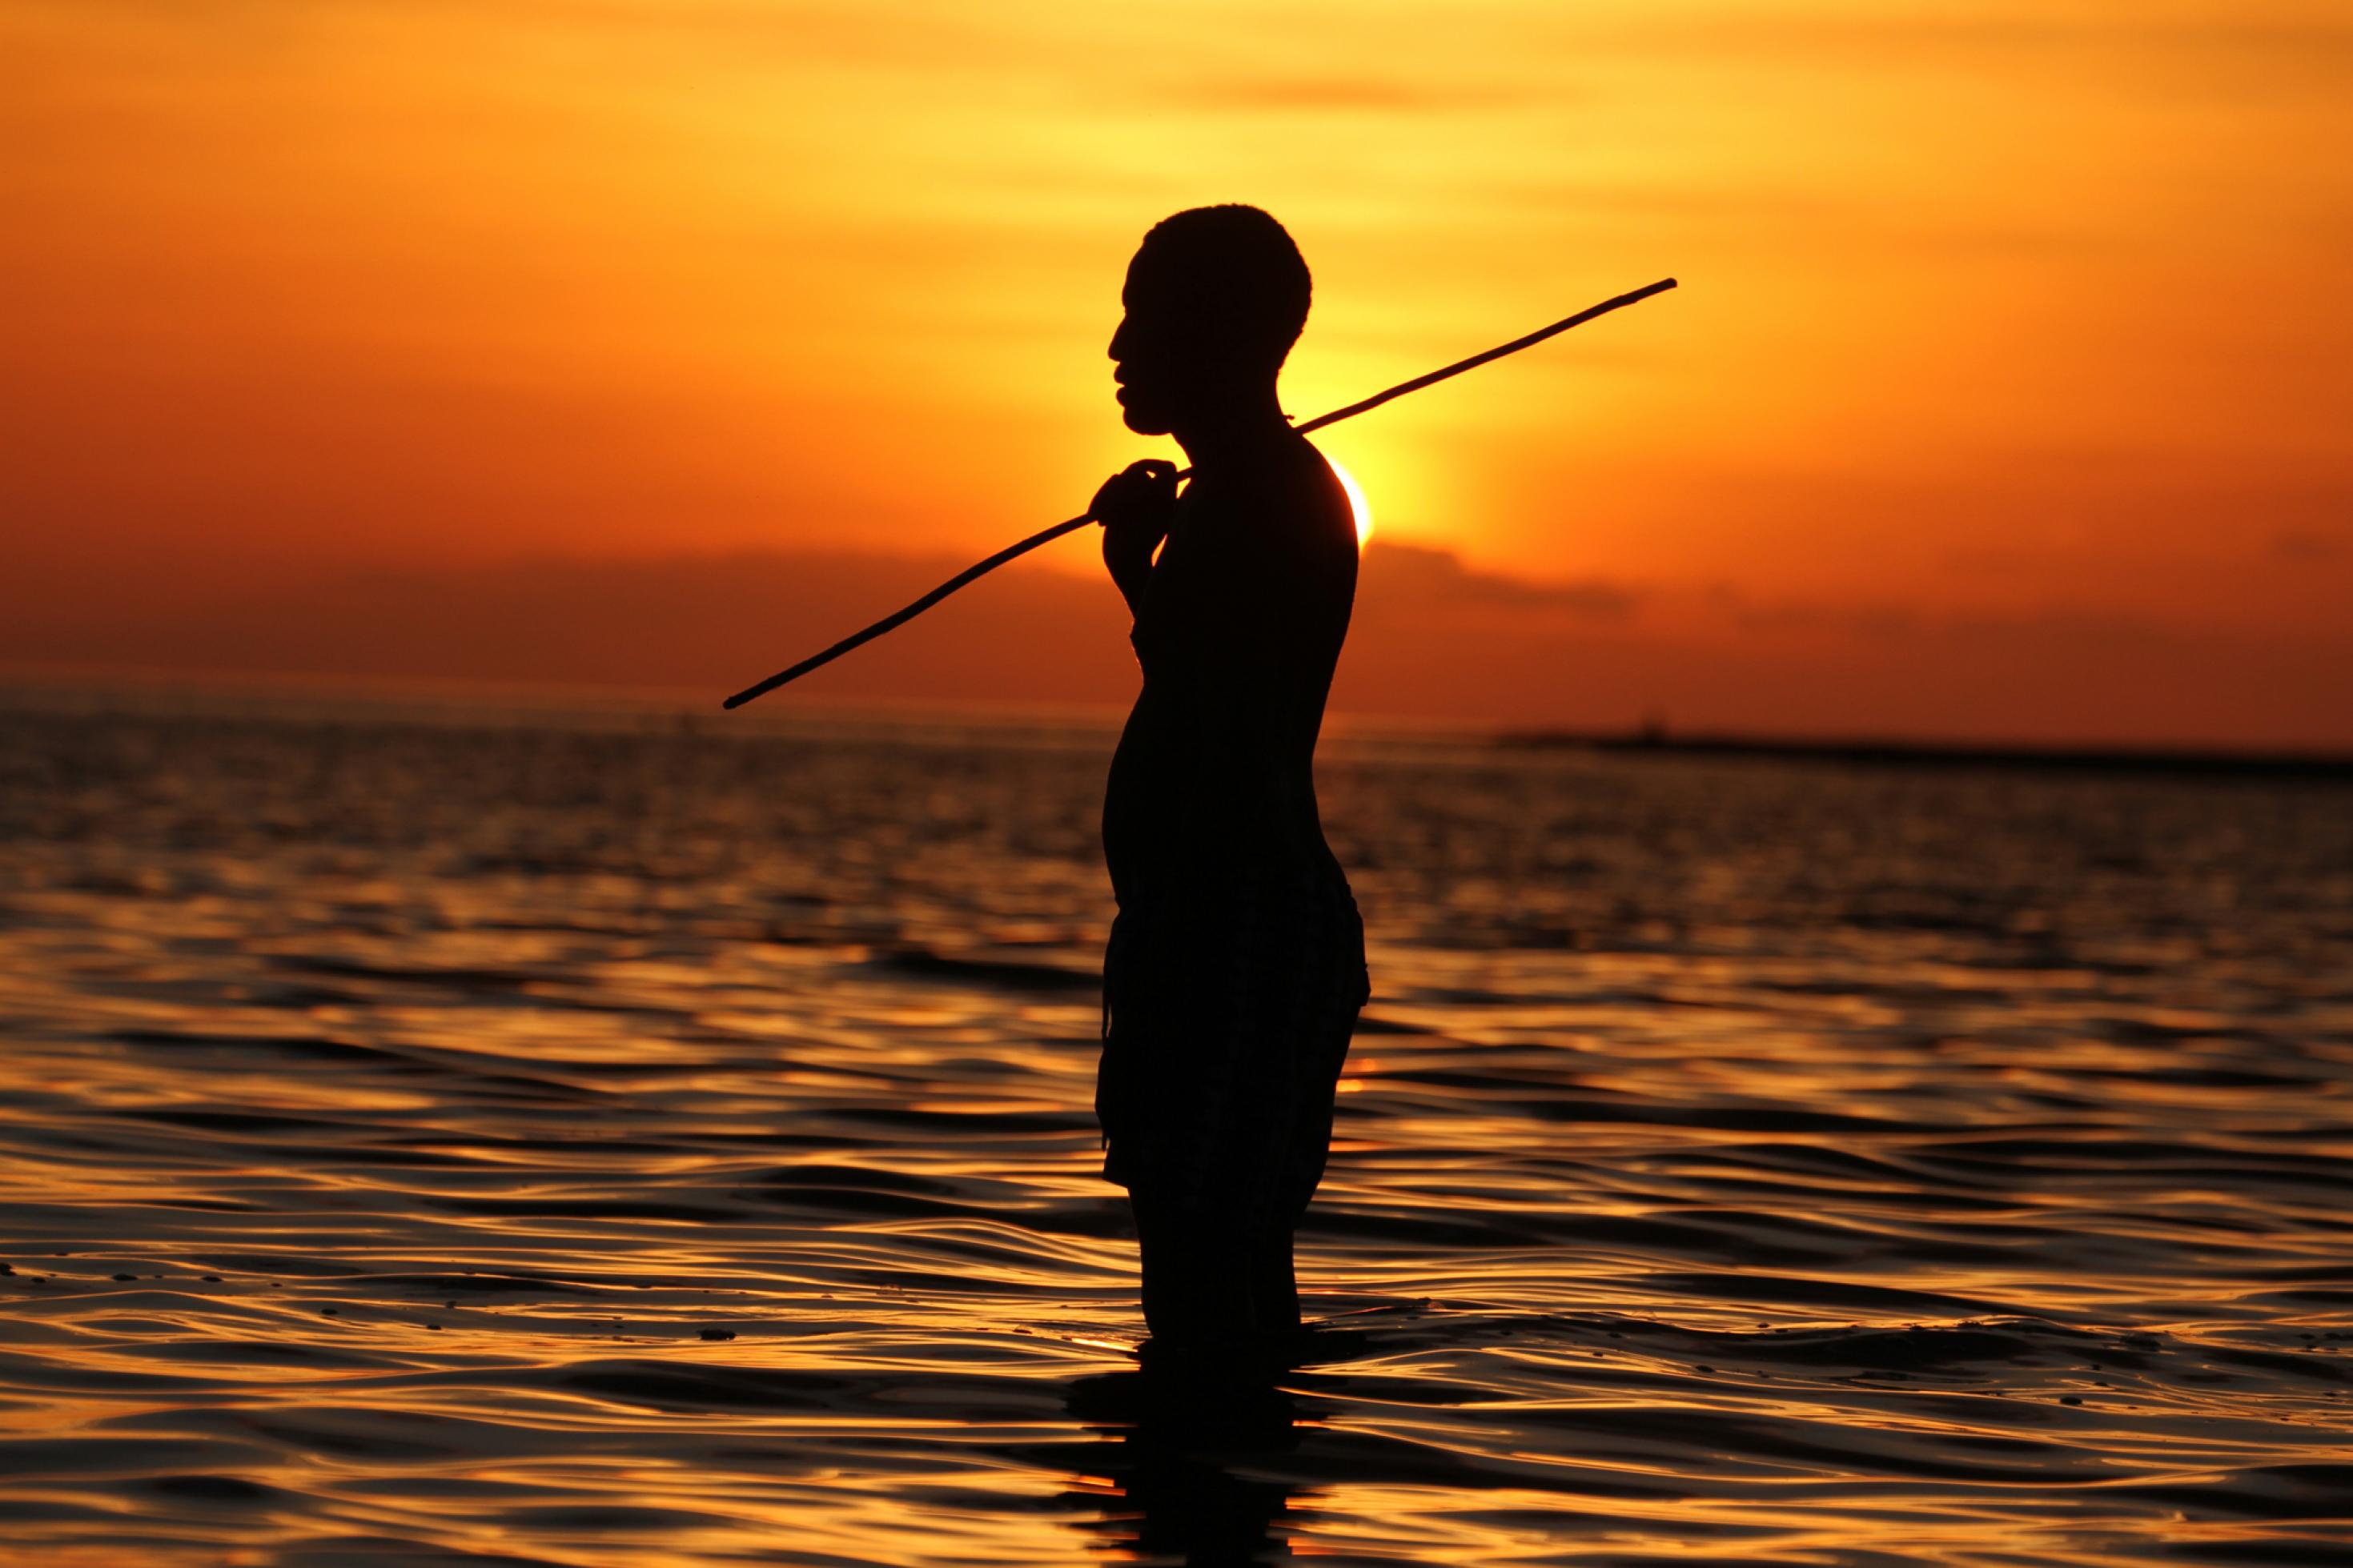 Ein afrikanischer Mann steht vor der untergehenden Sonne knietief im Wasser eines Sees, das leichte Wellen wirft. Er ist von der Seite zu sehen, hat einen Stock über der Schulter und schaut nach links. Durch das Gegenlicht ist nur die Silhouette des Mannes zu erkennen. Der Horizont leuchtet in goldgelben bis rötlichen Farben.